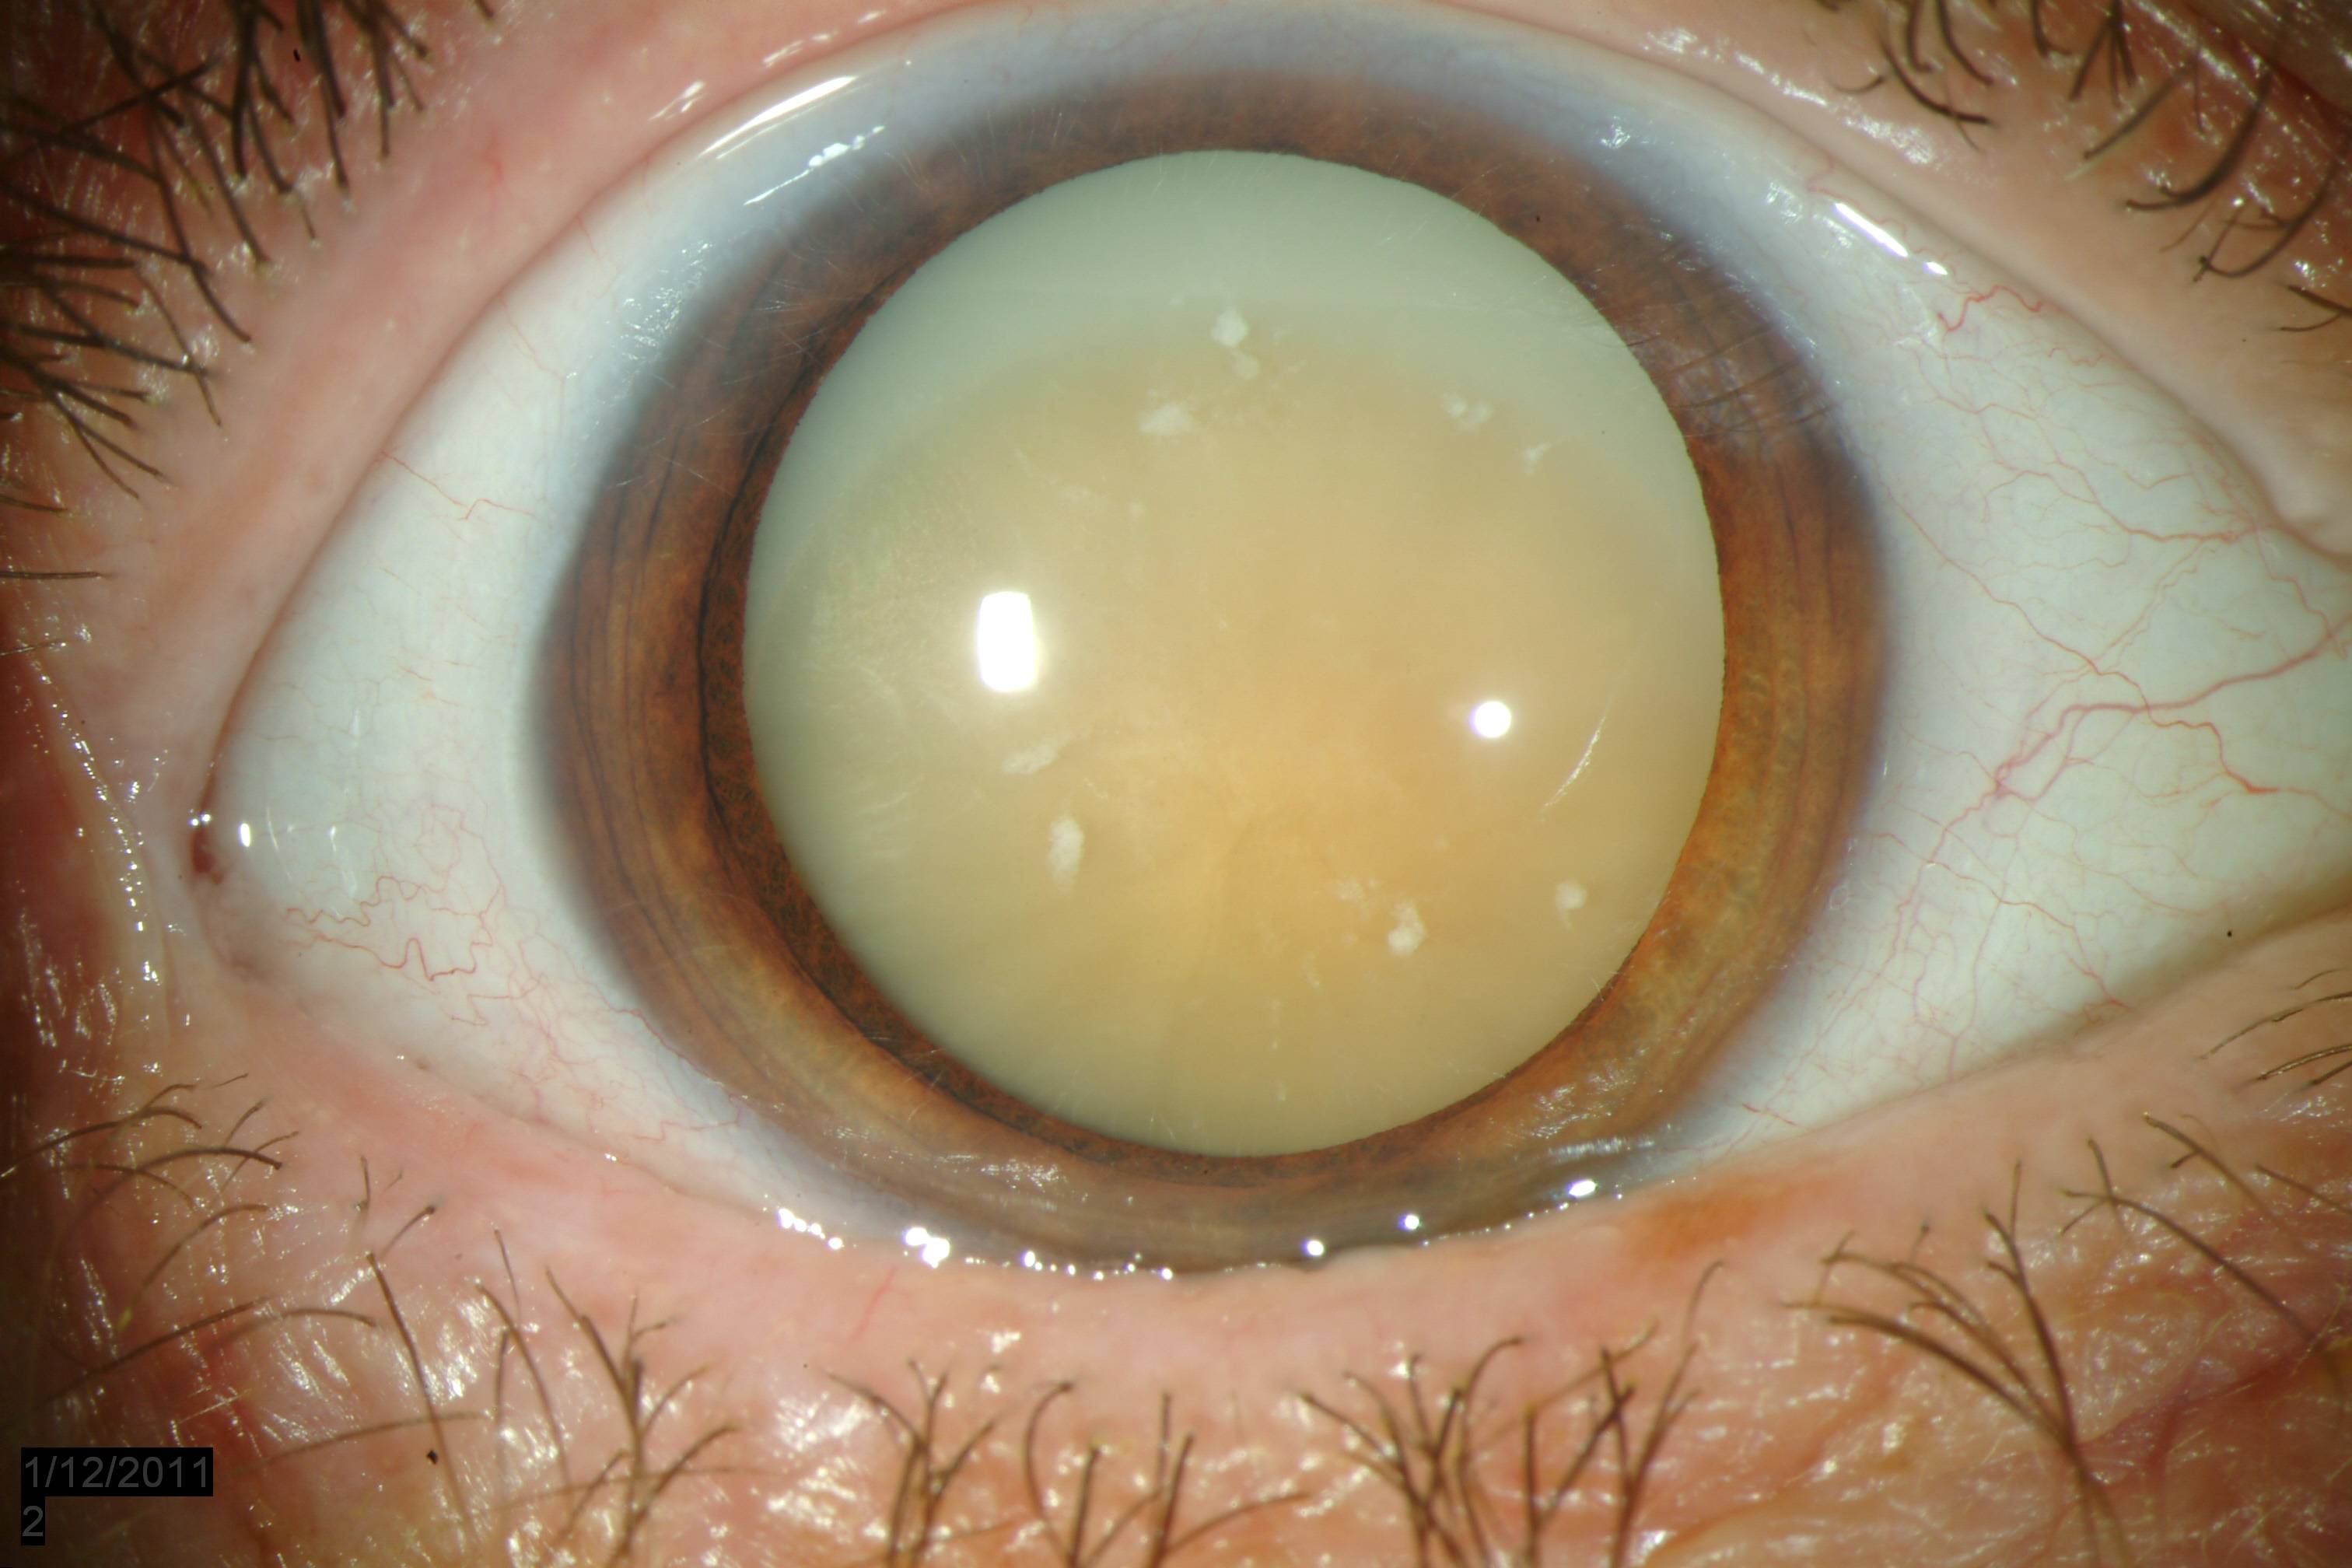 Факосклероз хрусталика глаза - что это, причины и лечение